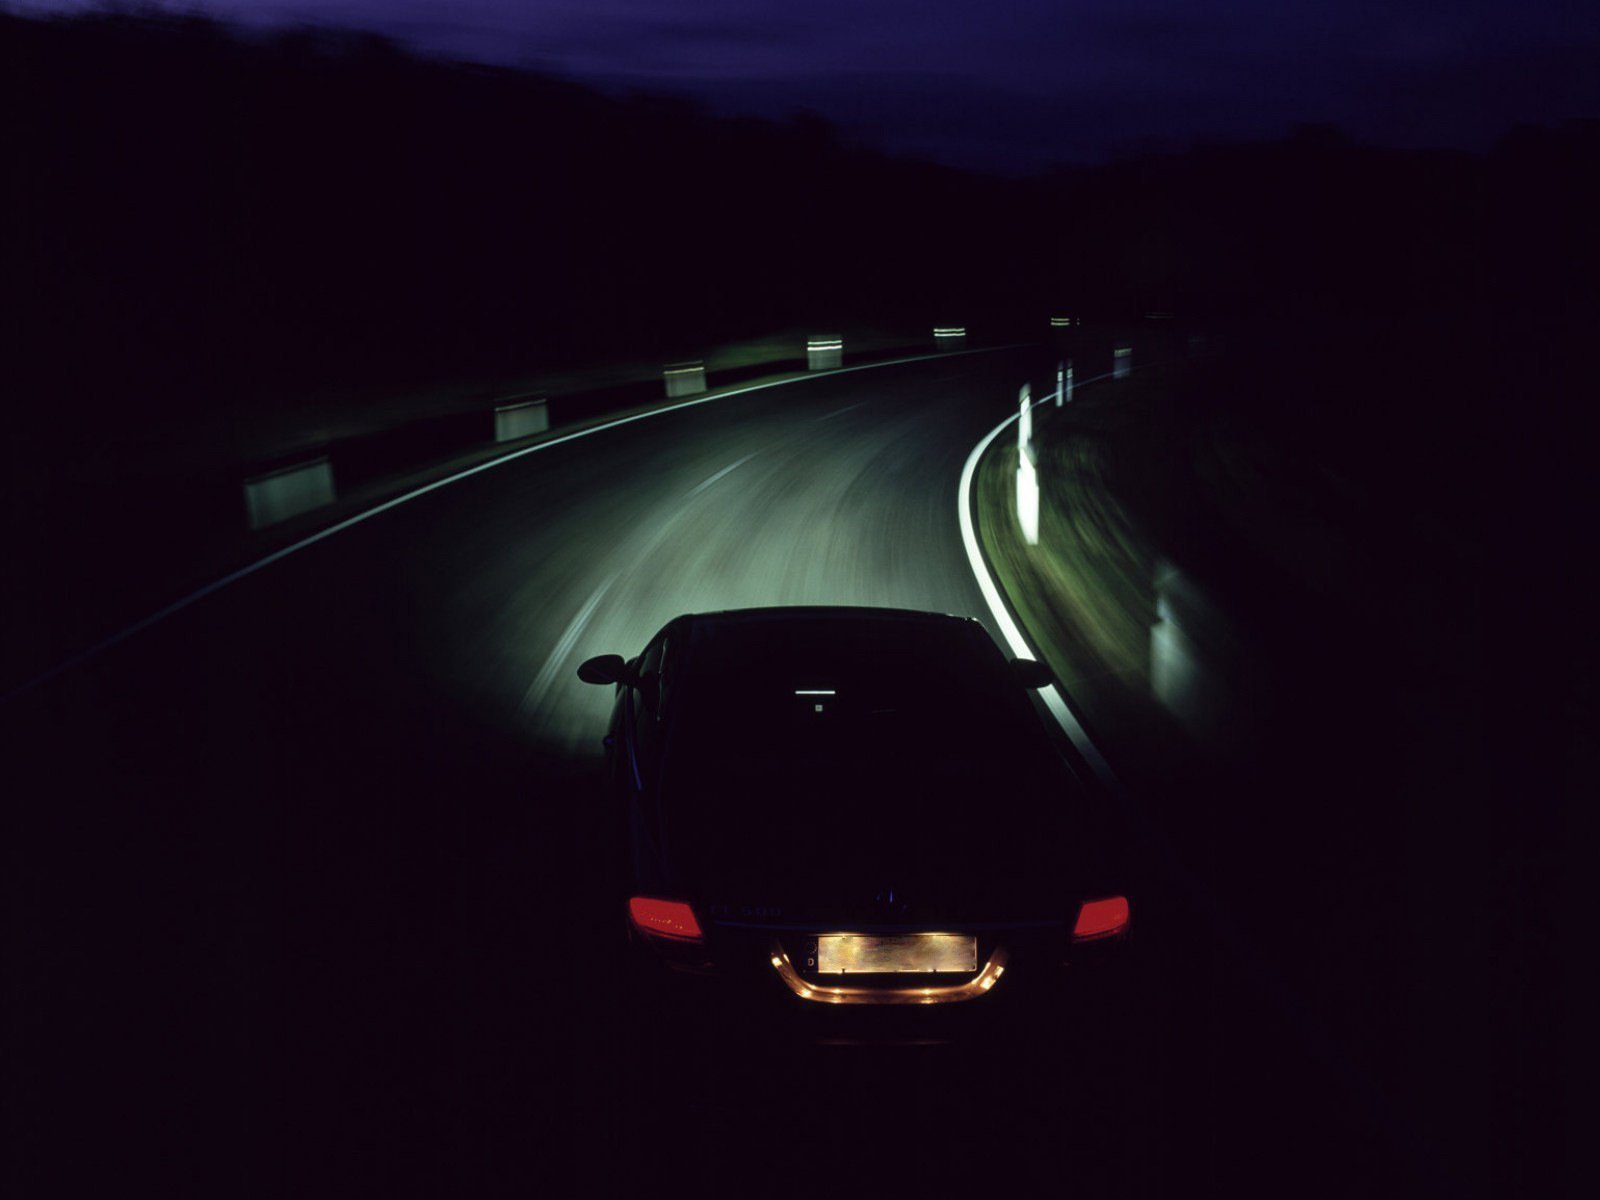 Вечер ехать дорога. Машина ночью. Машина на дороге. Ночь дорога авто. Машина в темноте на дороге.